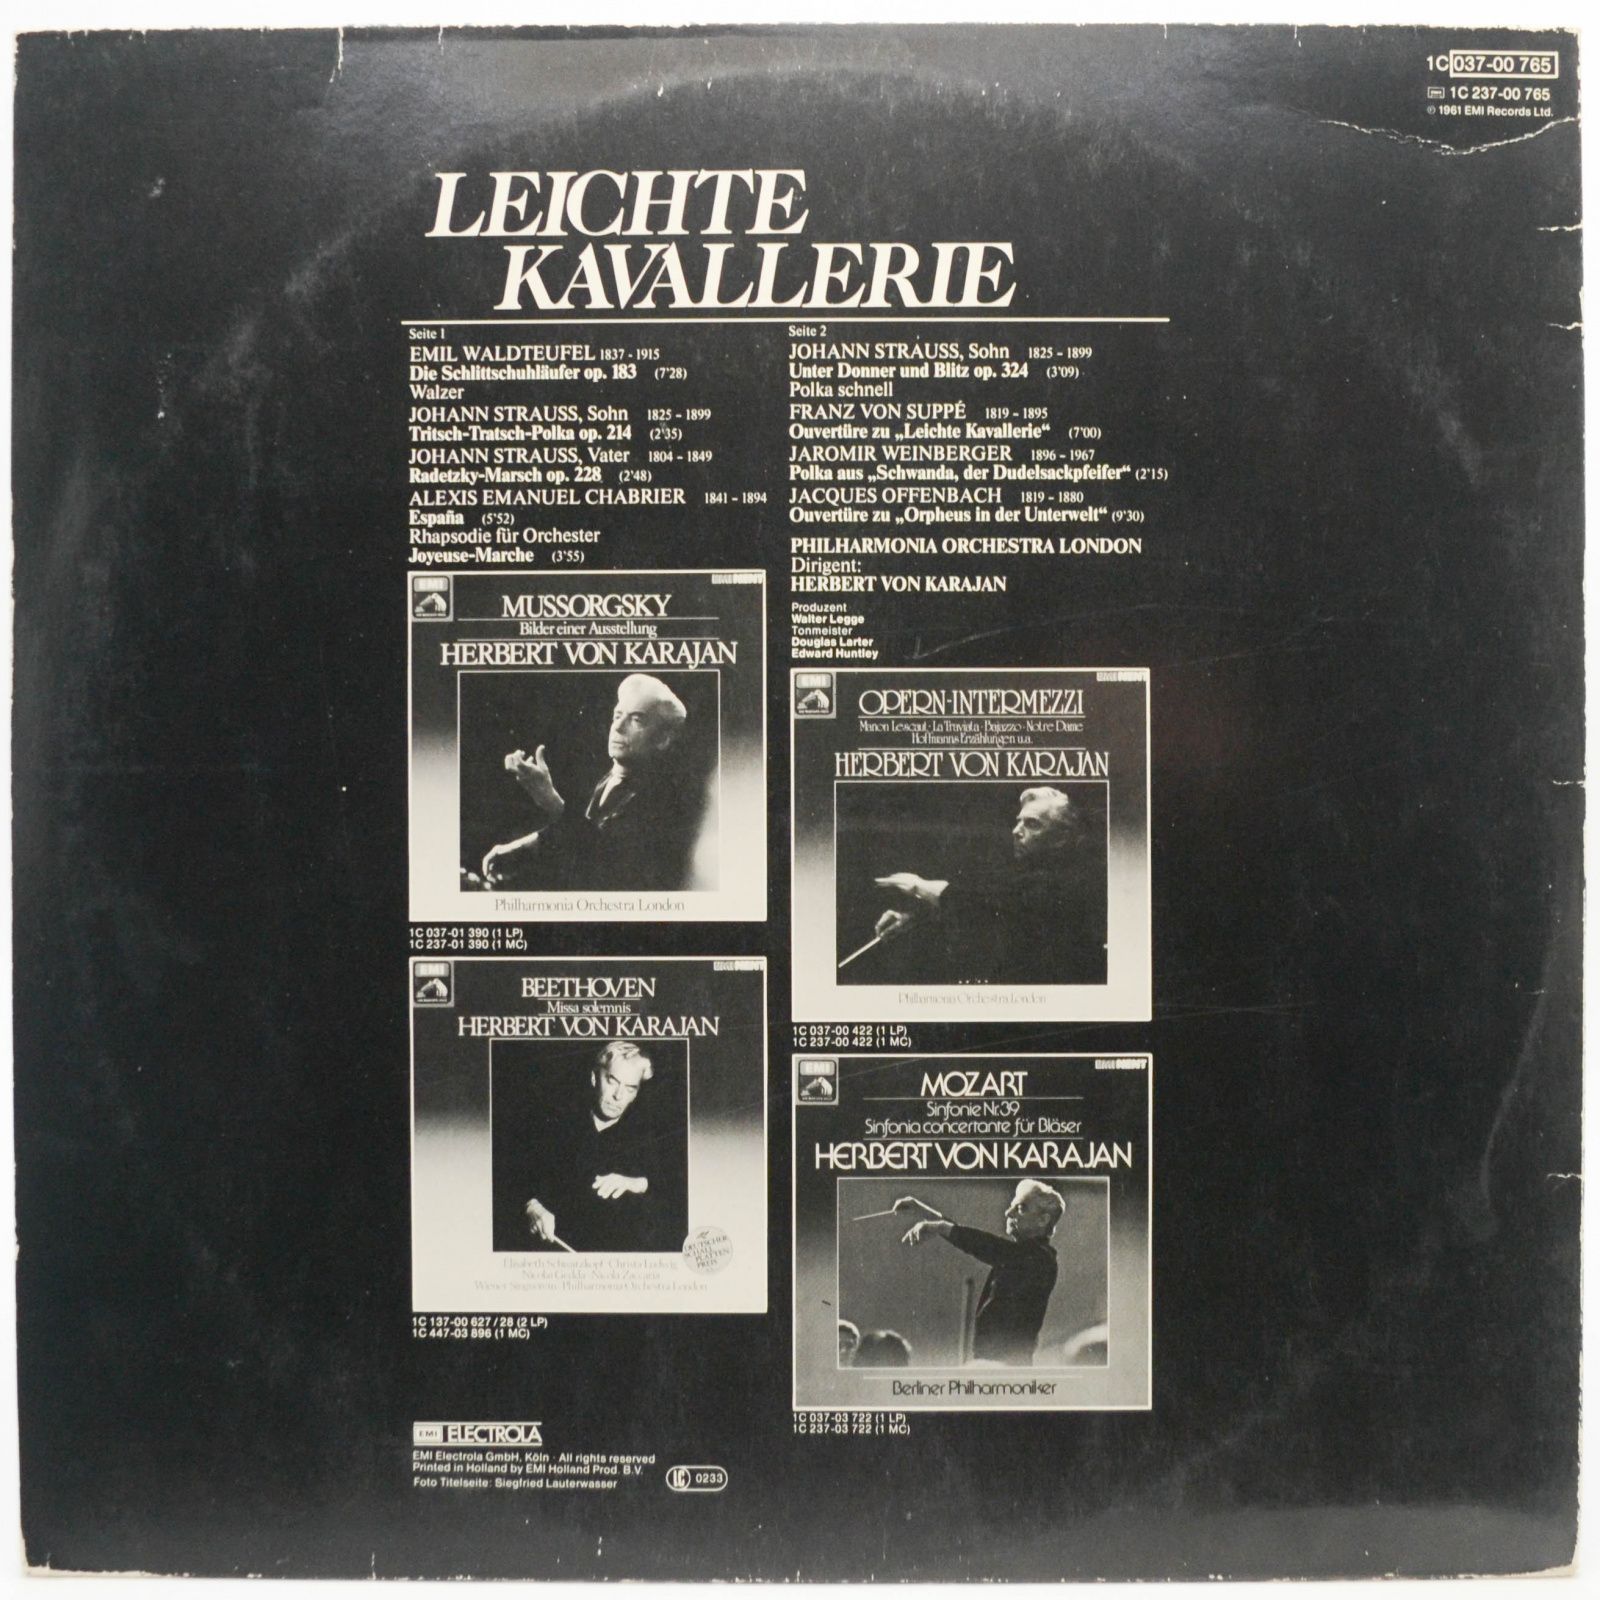 Herbert von Karajan, Philharmonia Orchestra of London — Leichte Kavallerie, 1977